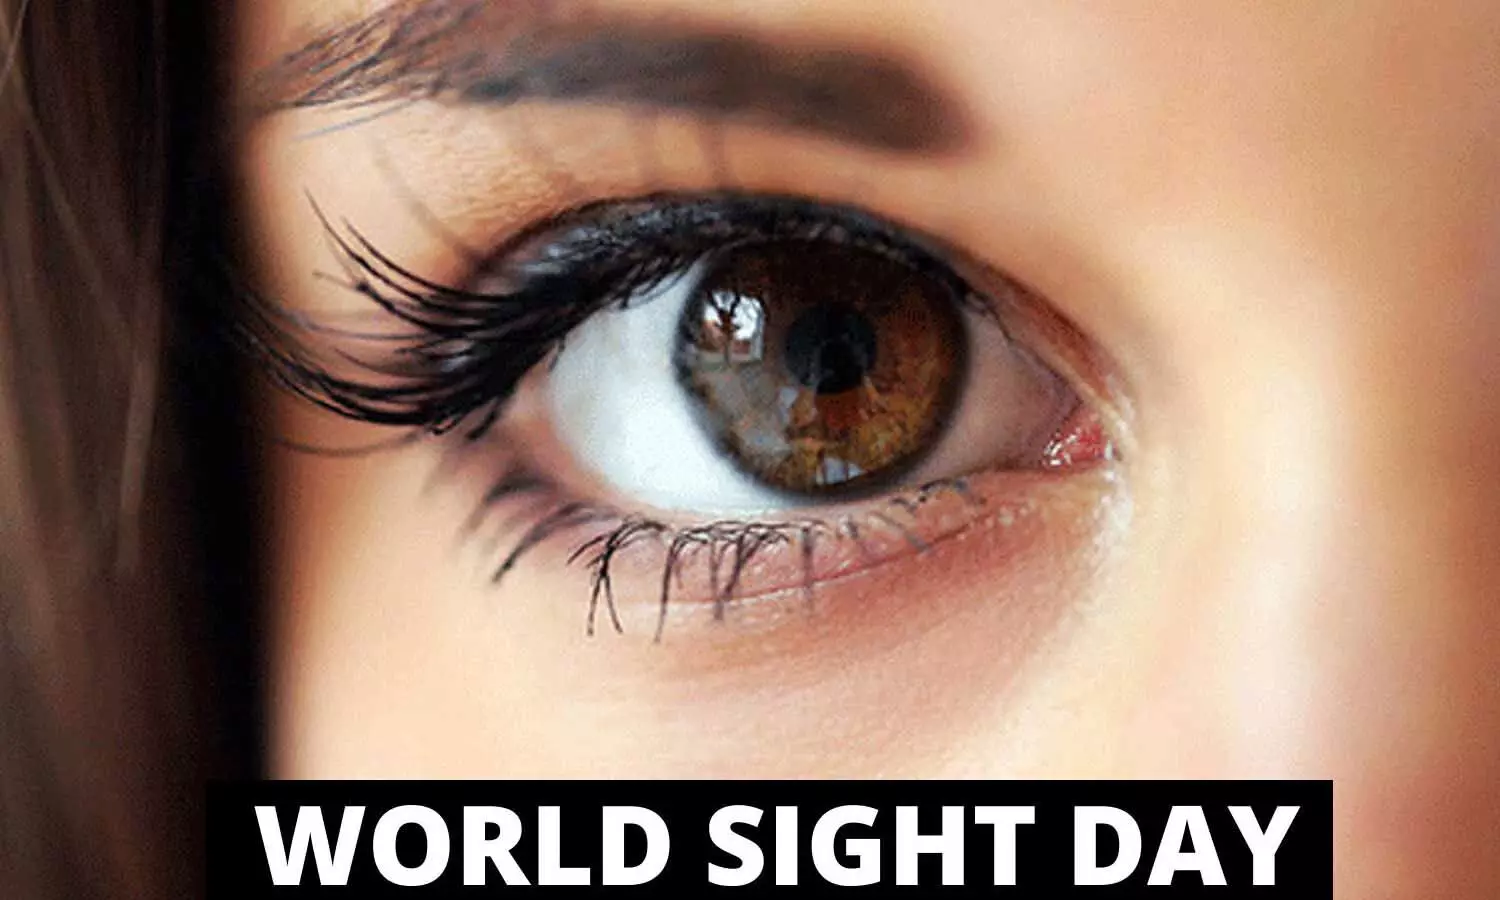 World Sight Day 2021: अपनी आंखों से प्यार करें, कम दृष्टि और अंधेपन के साथ रहते हैं क़रीब 285 मिलियन लोग